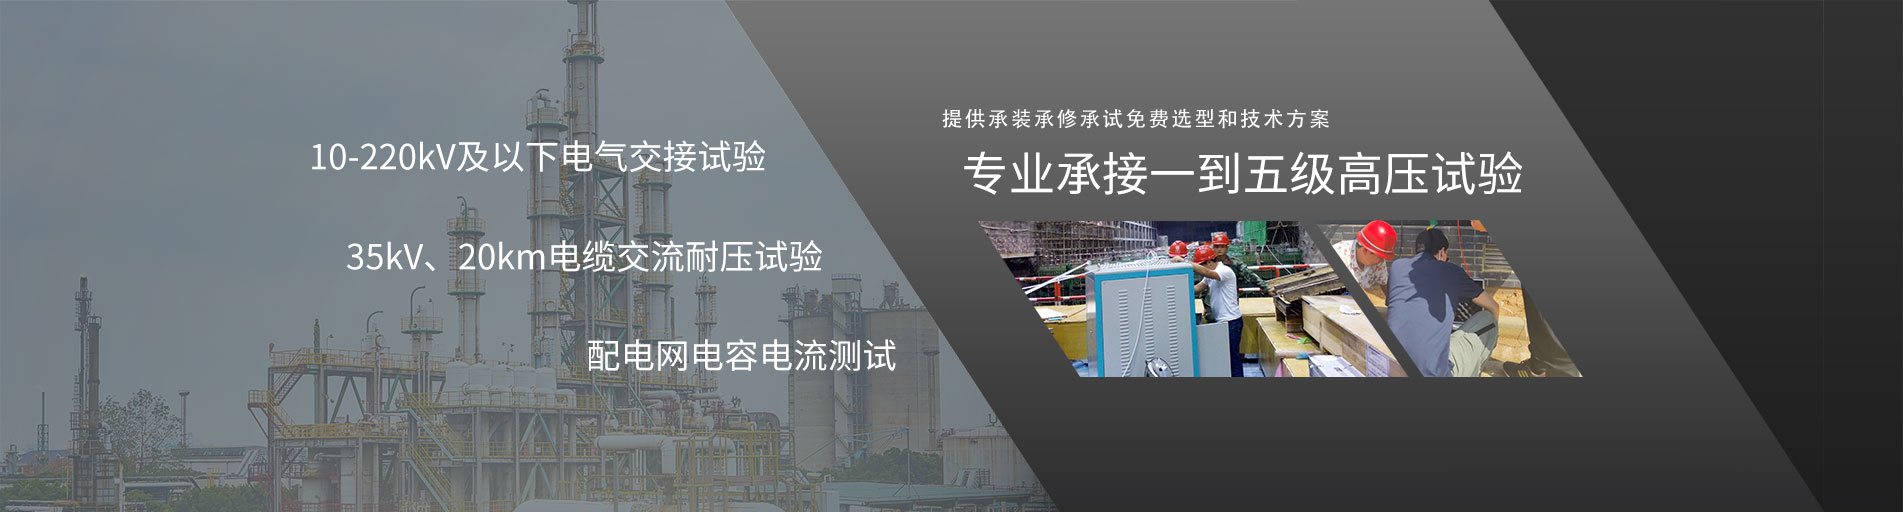 (中文) 承试电力为湖北襄阳某公司提供电力预防性试验服务